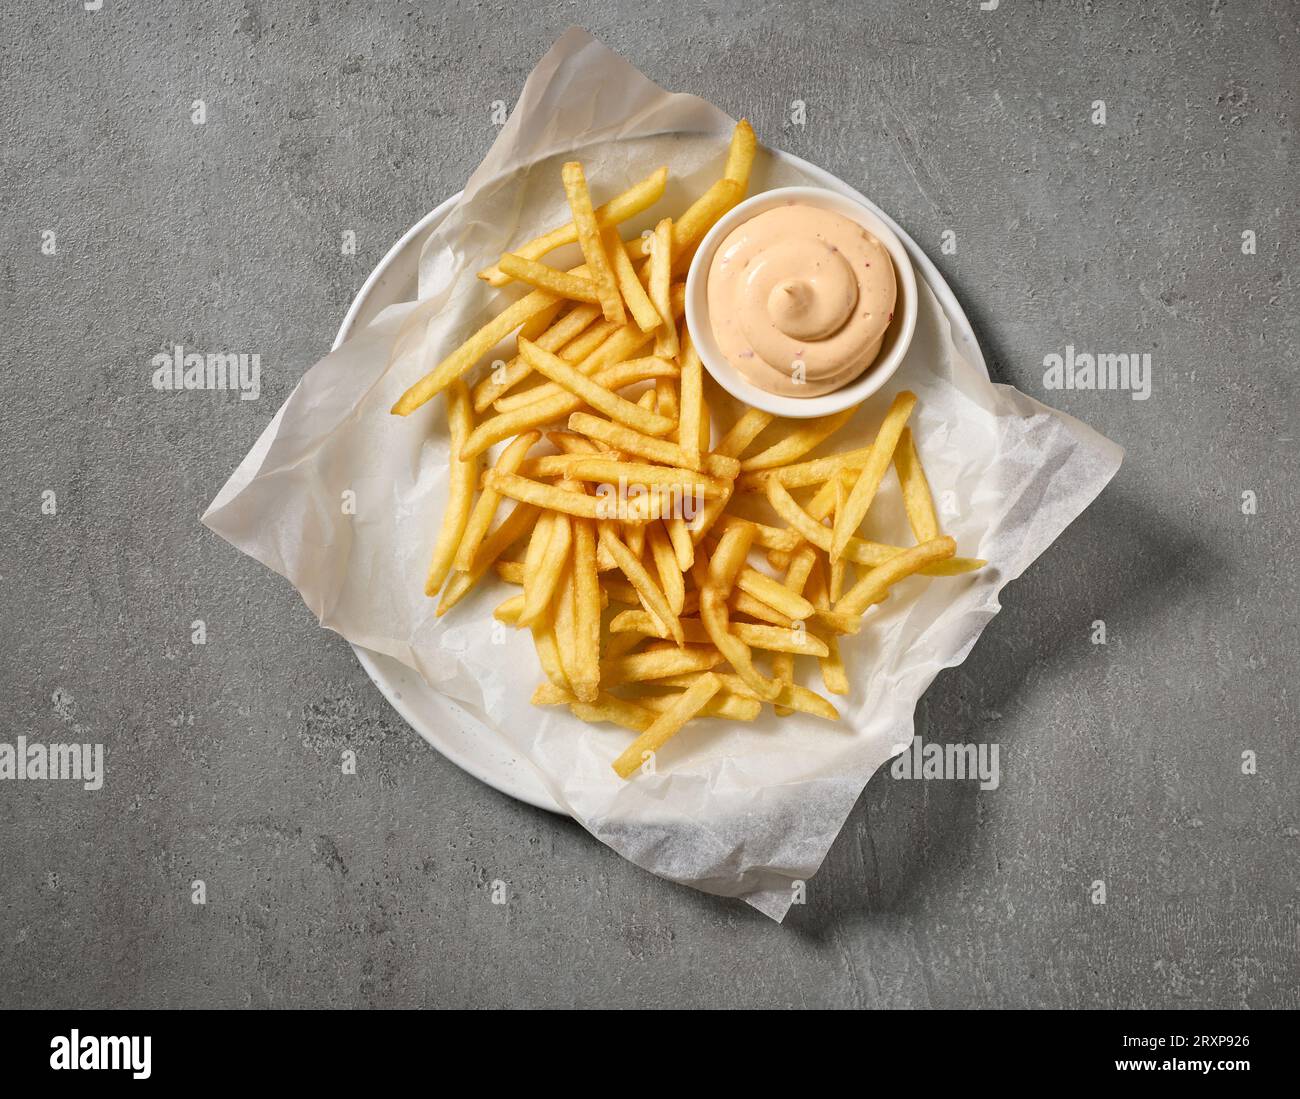 assiette de frites et sauce mayonnaise trempée sur la table grise, vue de dessus Banque D'Images